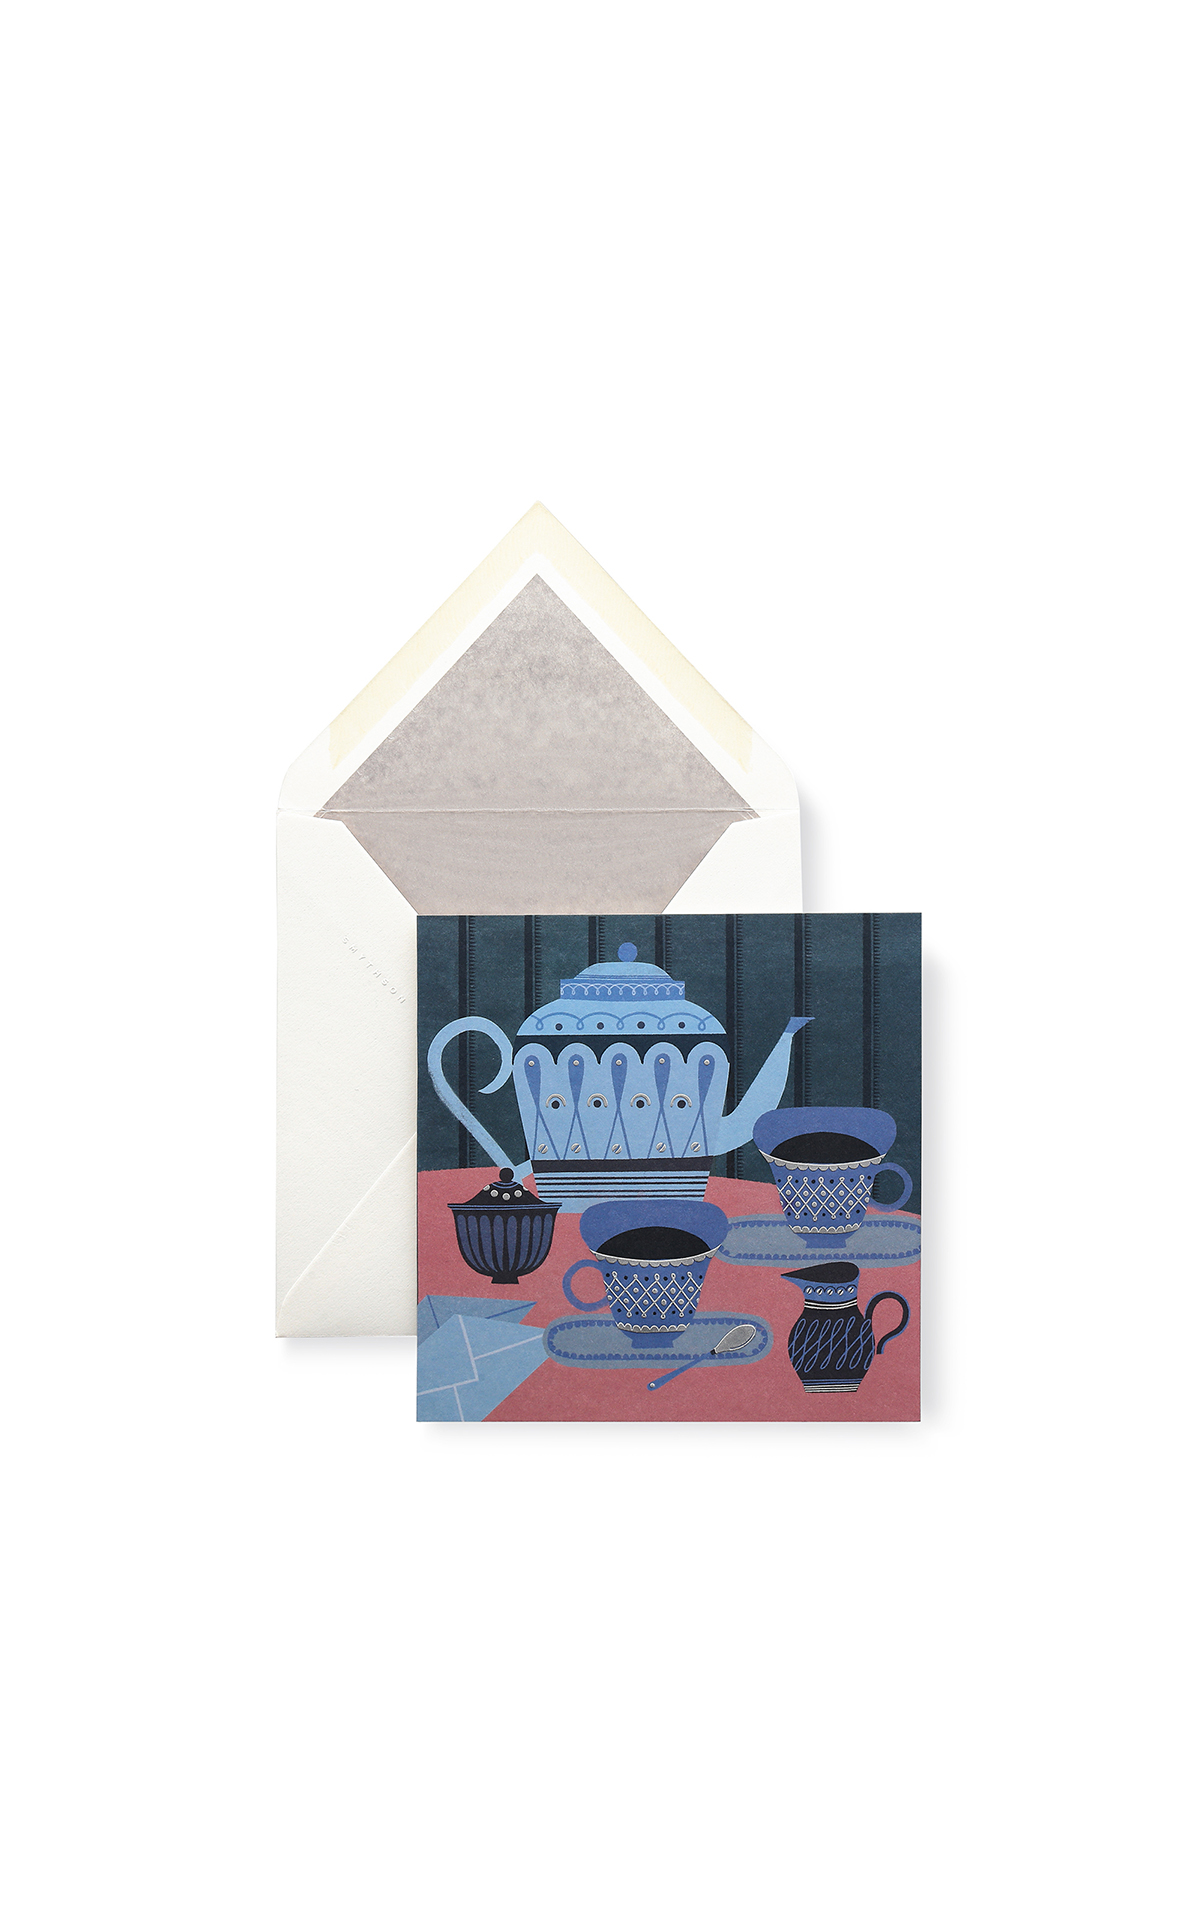 Smythson Tea set card from Bicester Village